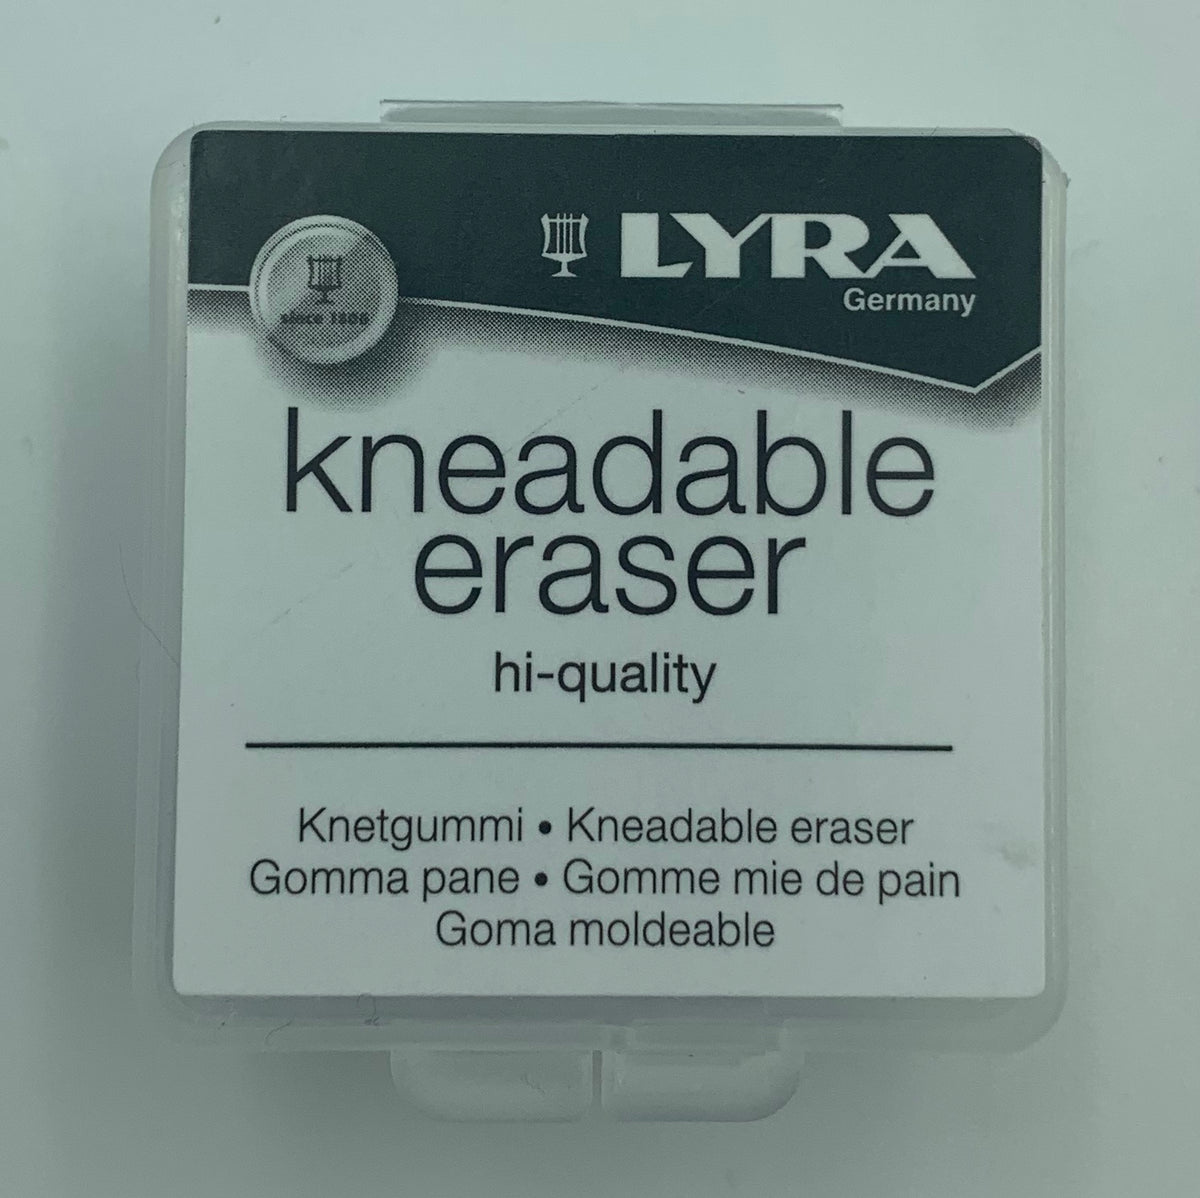 Lyra Kneadable Eraser Each